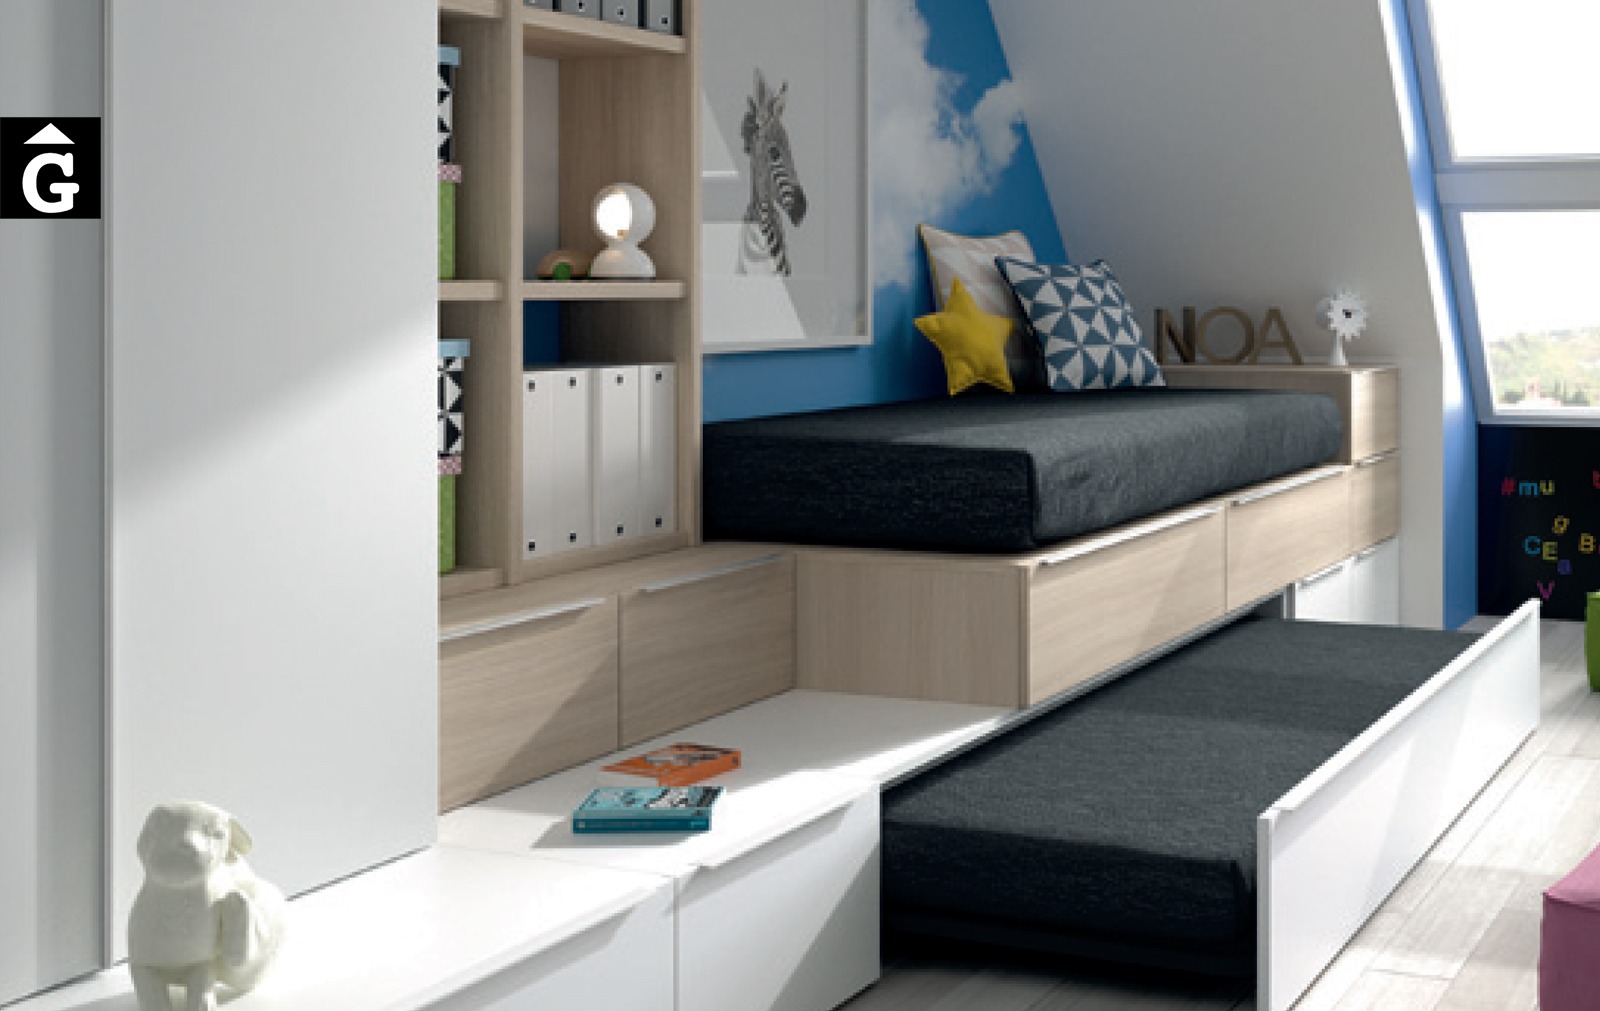 Llit niu i calaixos blanc-bedrooms-infinity-muebles-jjp-by-mobles-gifreu-llits-de-nado-infantil-juvenil-singel-disseny-actual-qualitat